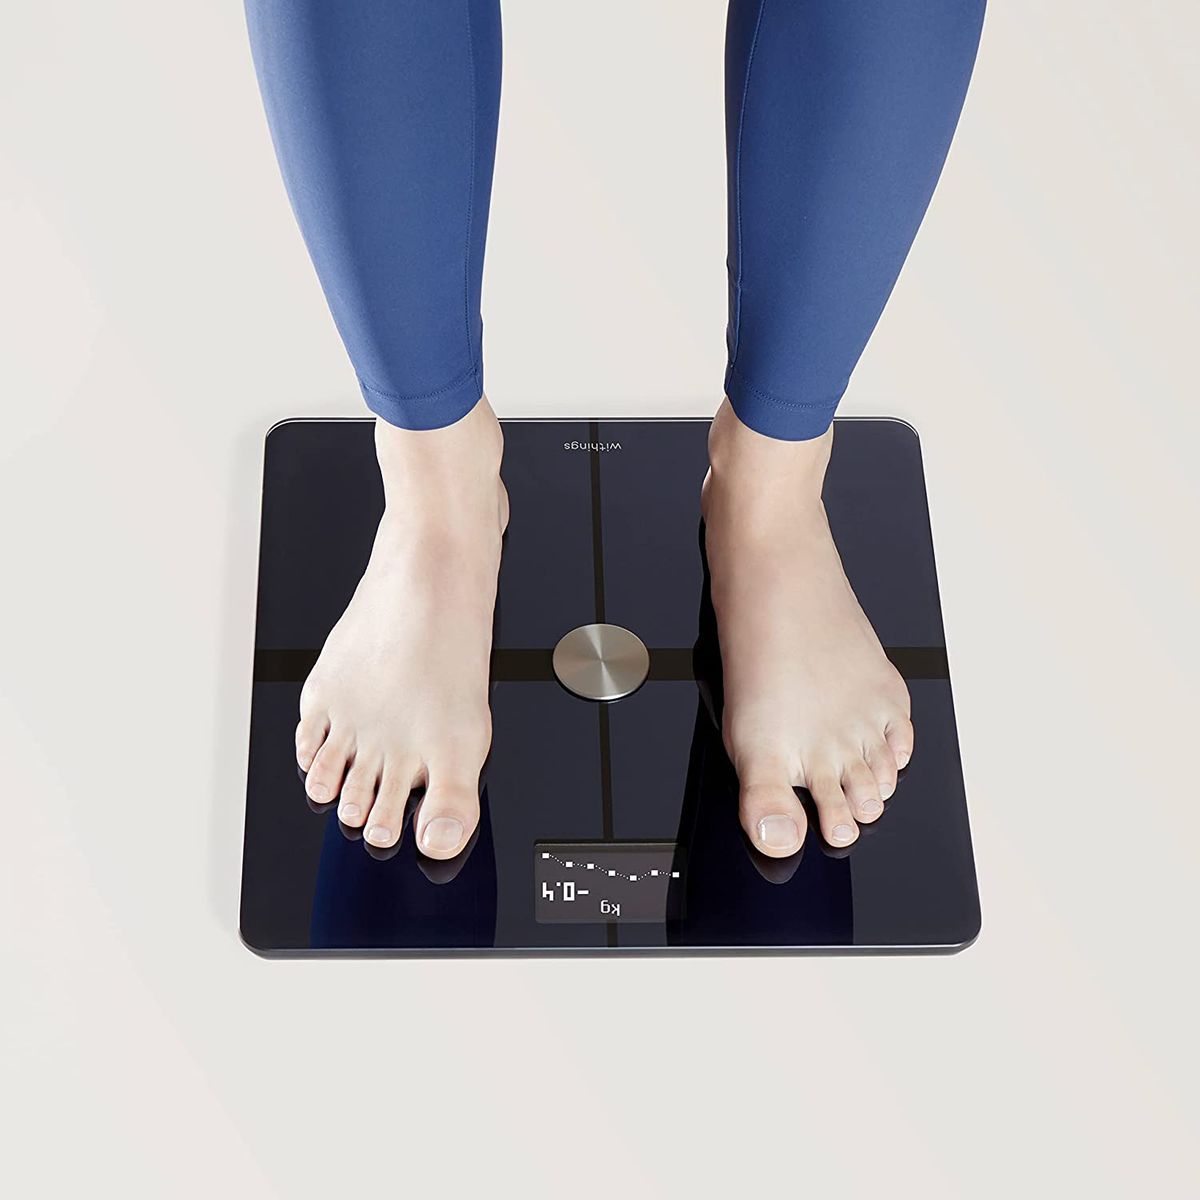 Withings Body+ - WLAN-Smart-Waage mit Körperzusammensetzungsfunktion, Messung von Körperfett, BMI, Muskelmasse, Wasseranteil, digitale Körperfettwaage, App-Sync via Bluetooth oder WLAN Weiß